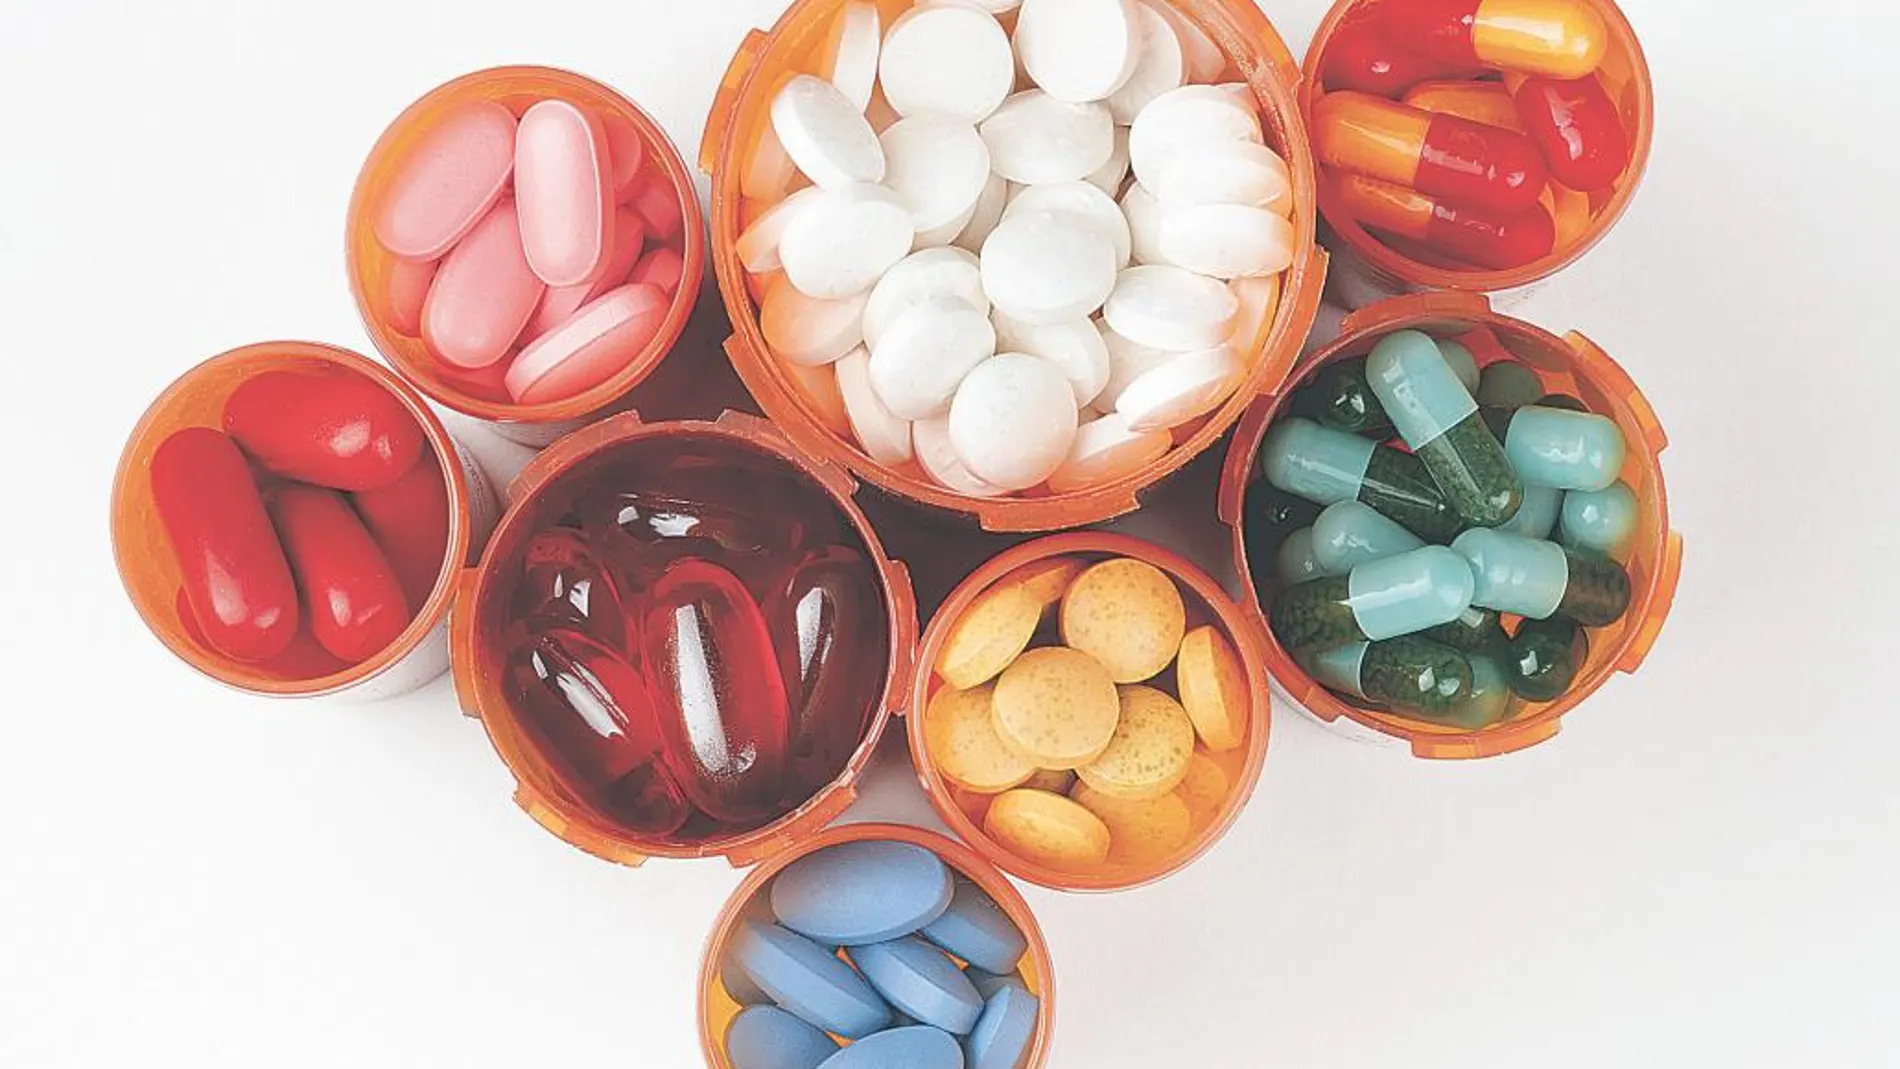 Suplementos medicinales: Puro efecto placebo